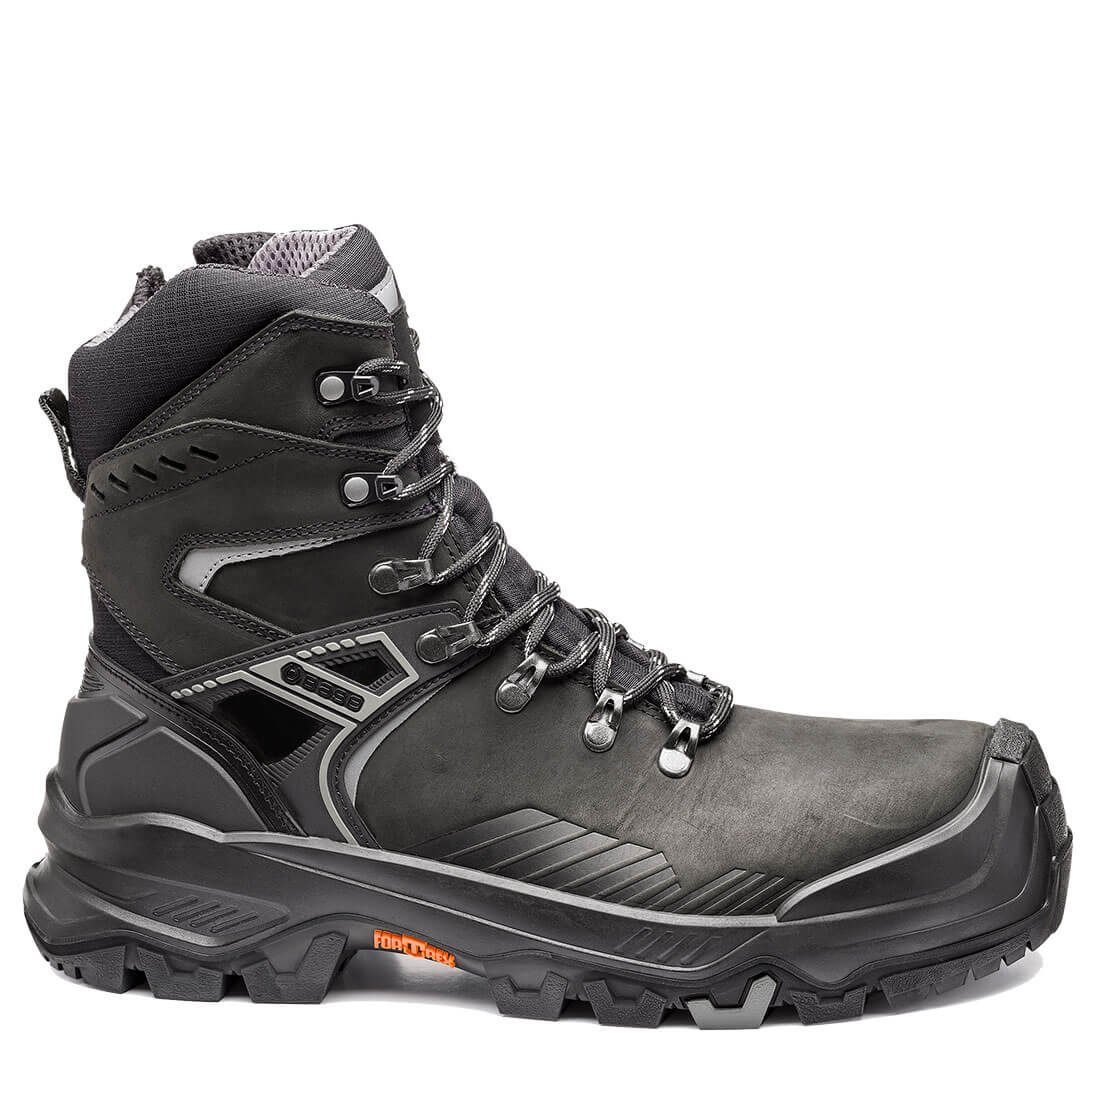 Base Footwear Sicherheitsschuhe Allroundshoes B1611 Wärmeisolierend, Sicherheitsschuh Wasserabweisend, Kälteisoliert T-MASSIVE Rutchhemmend, - Durchtrittsicher